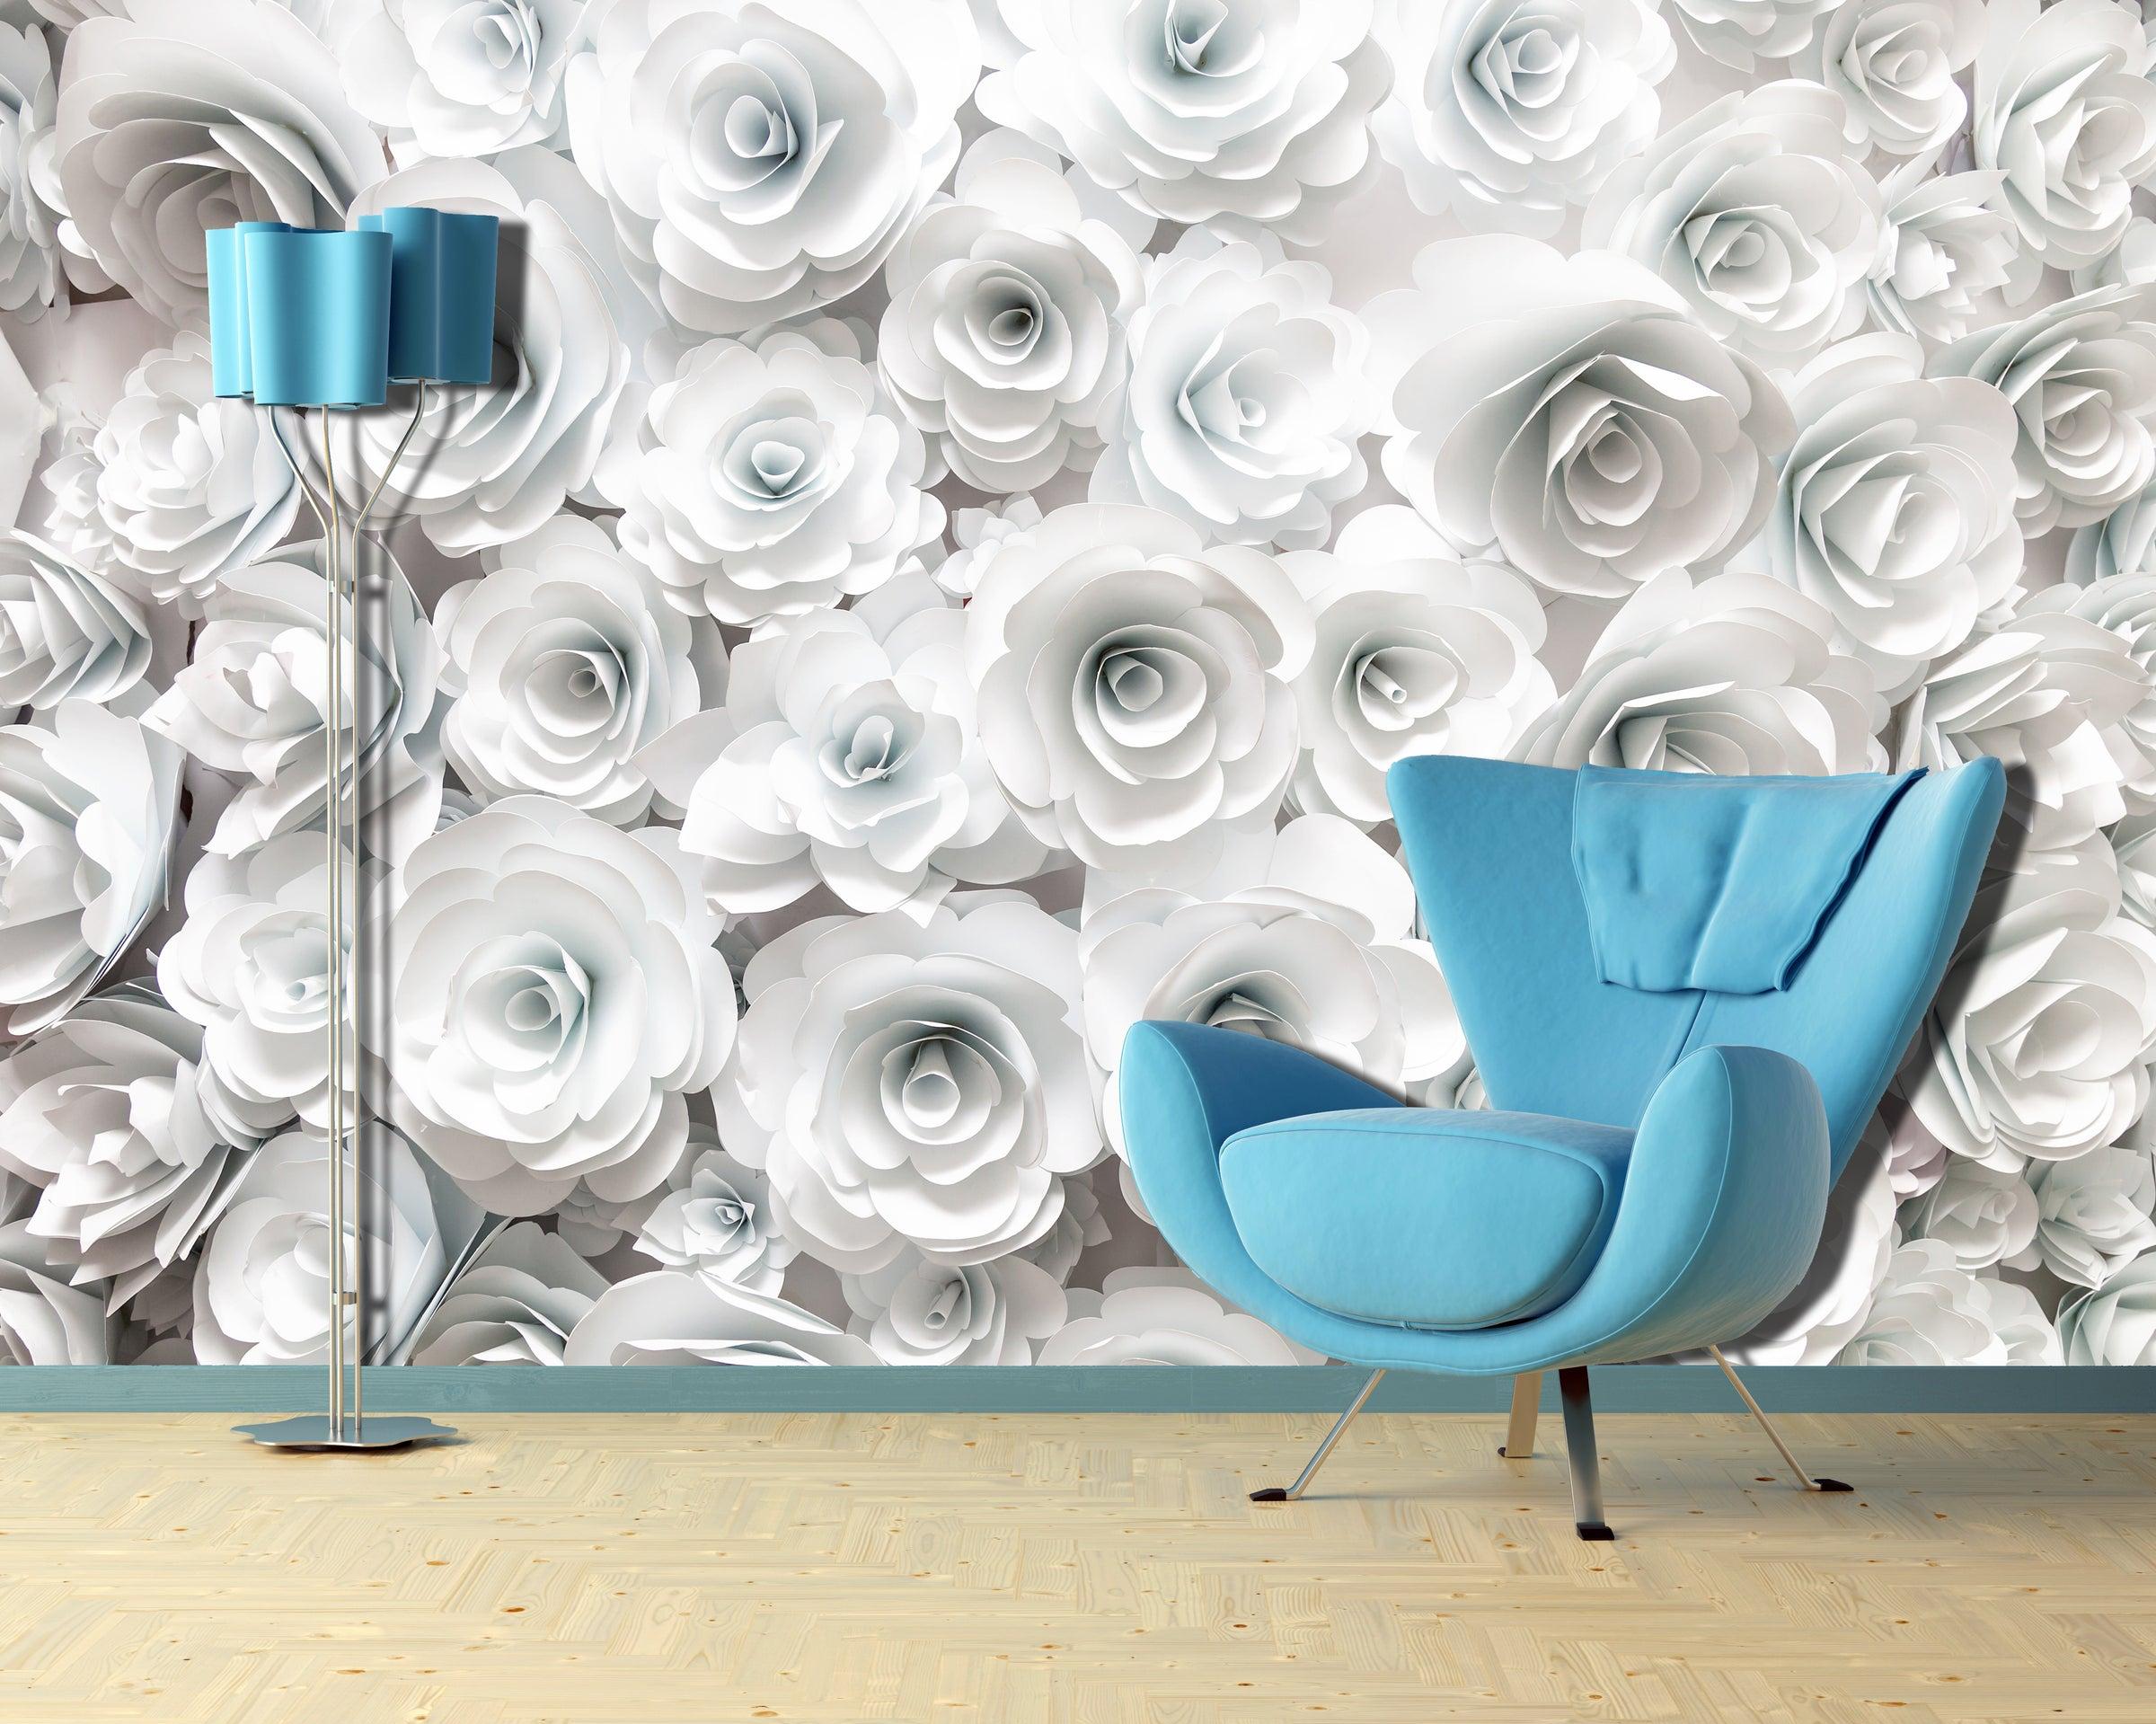 Origami 3d Roses Wallpaper Prime Walls Us